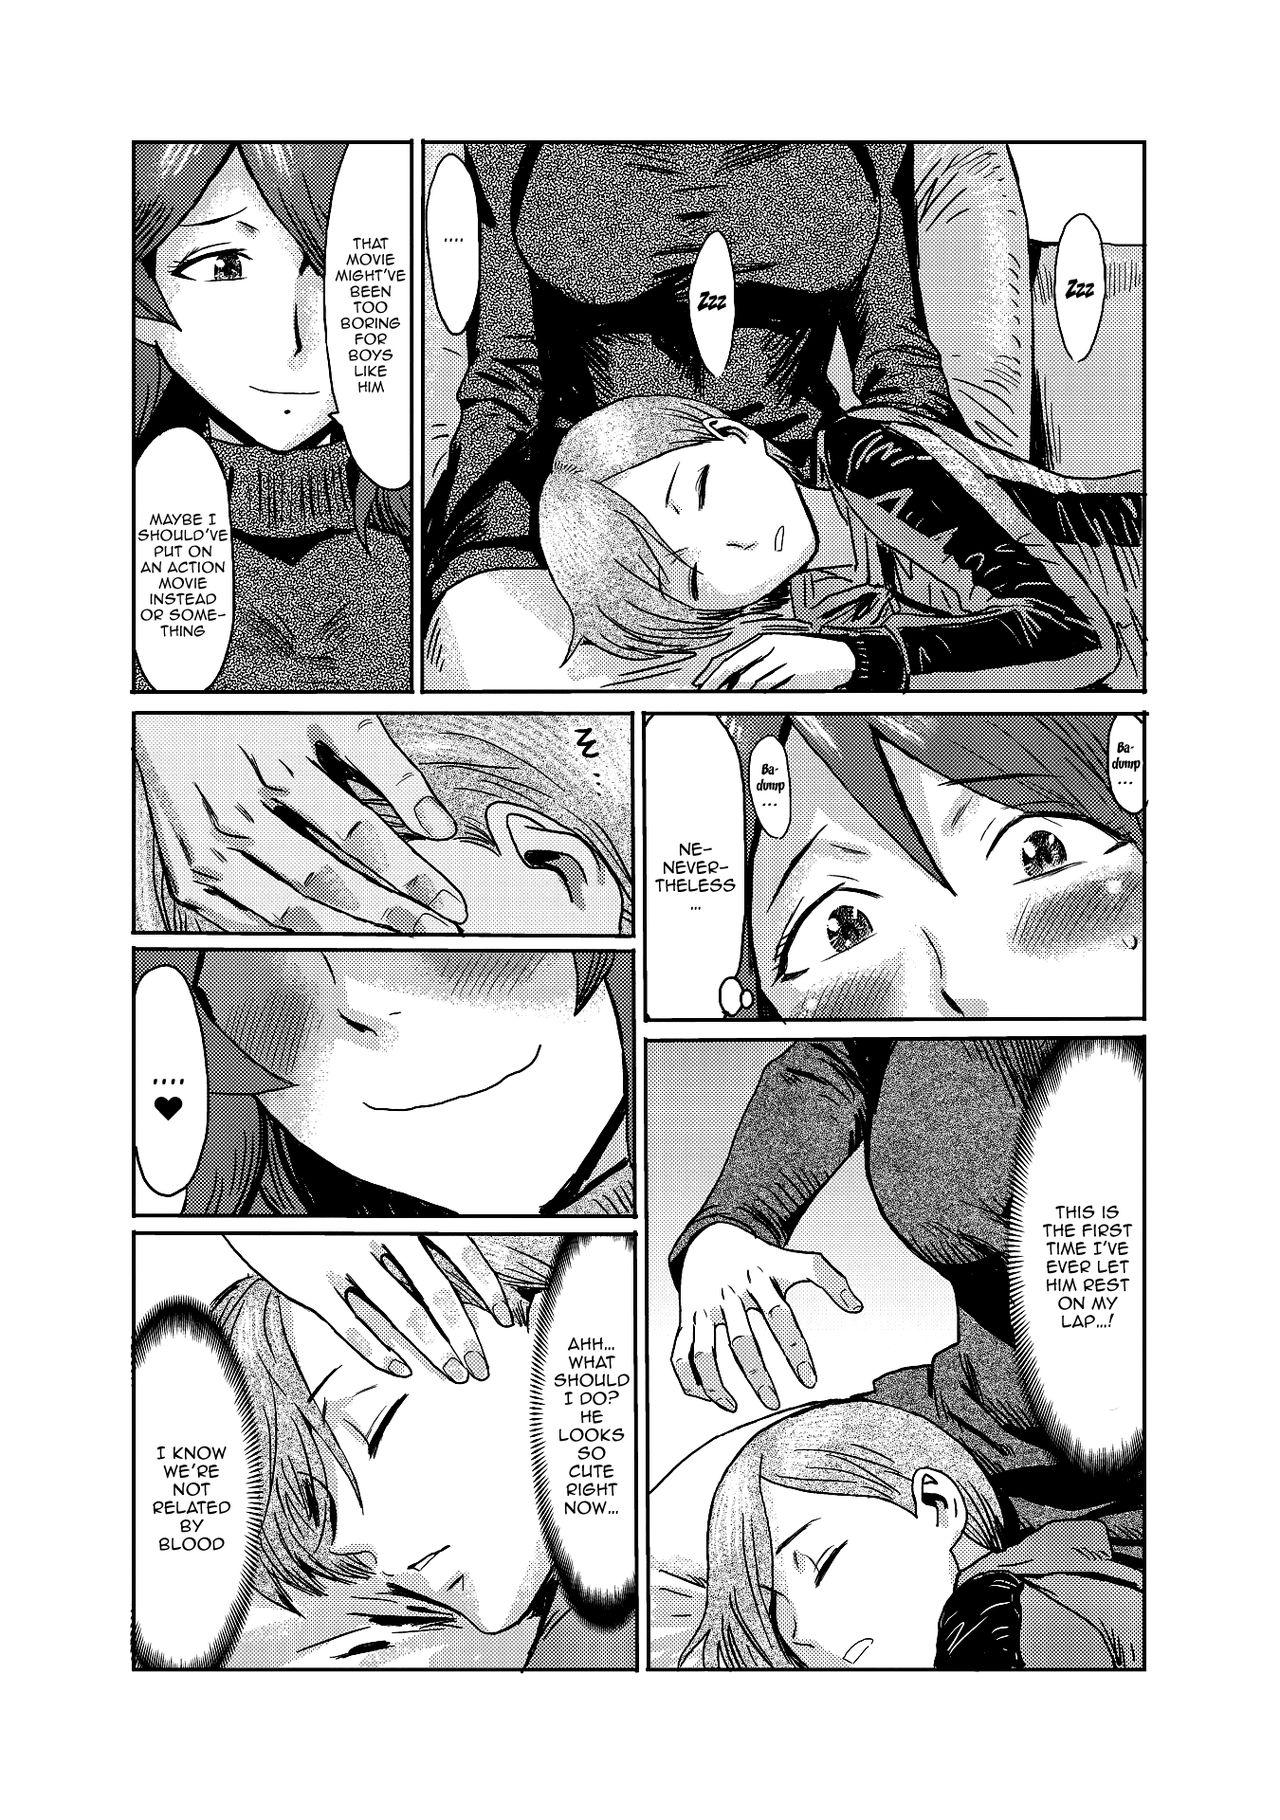 Girlfriends Gibo Ochi Gostoso - Page 4